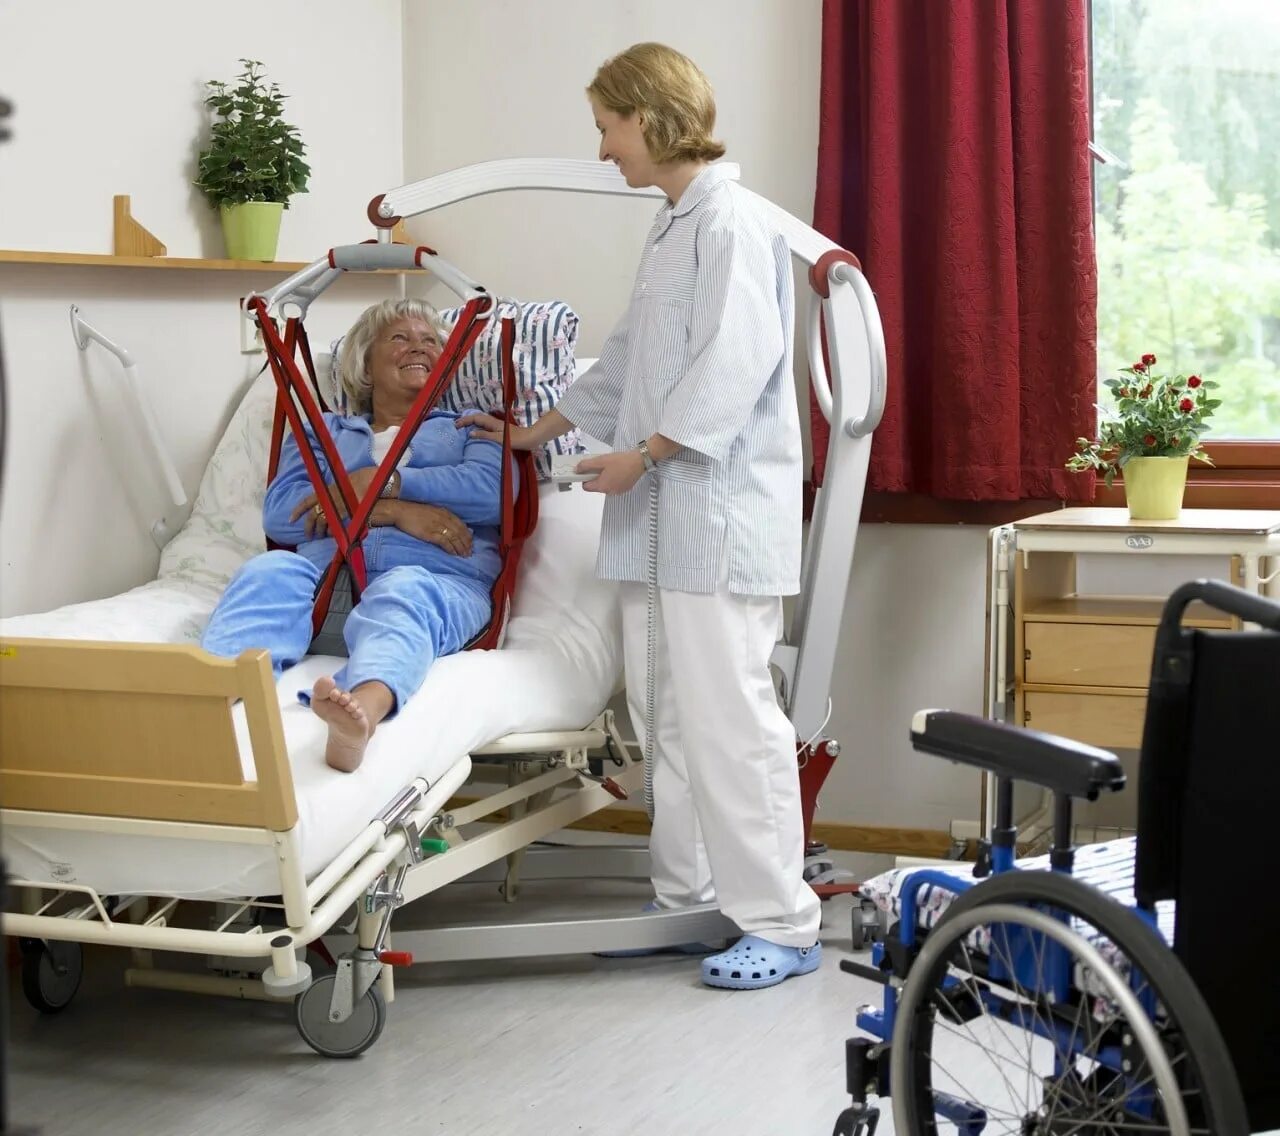 Перемещение лежачих больных. Оборудование для перемещения тяжелобольного пациента. Коляска для лежачих больных. Уход за пациентом. Пересадка инвалидов